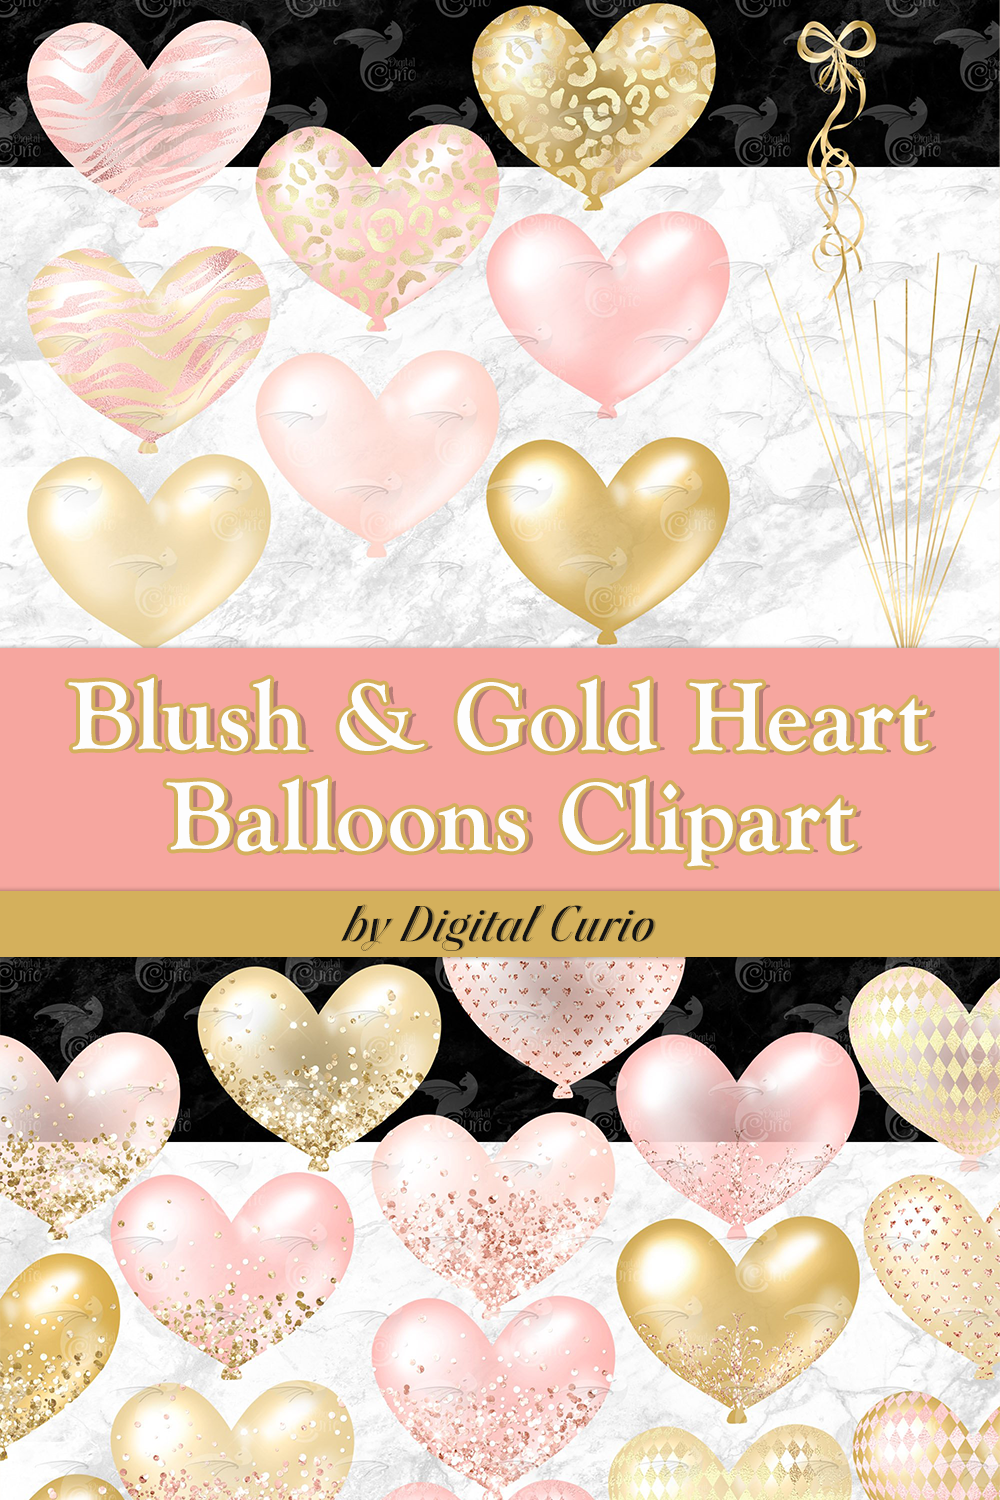 Blush gold heart balloons clipart of pinterest.